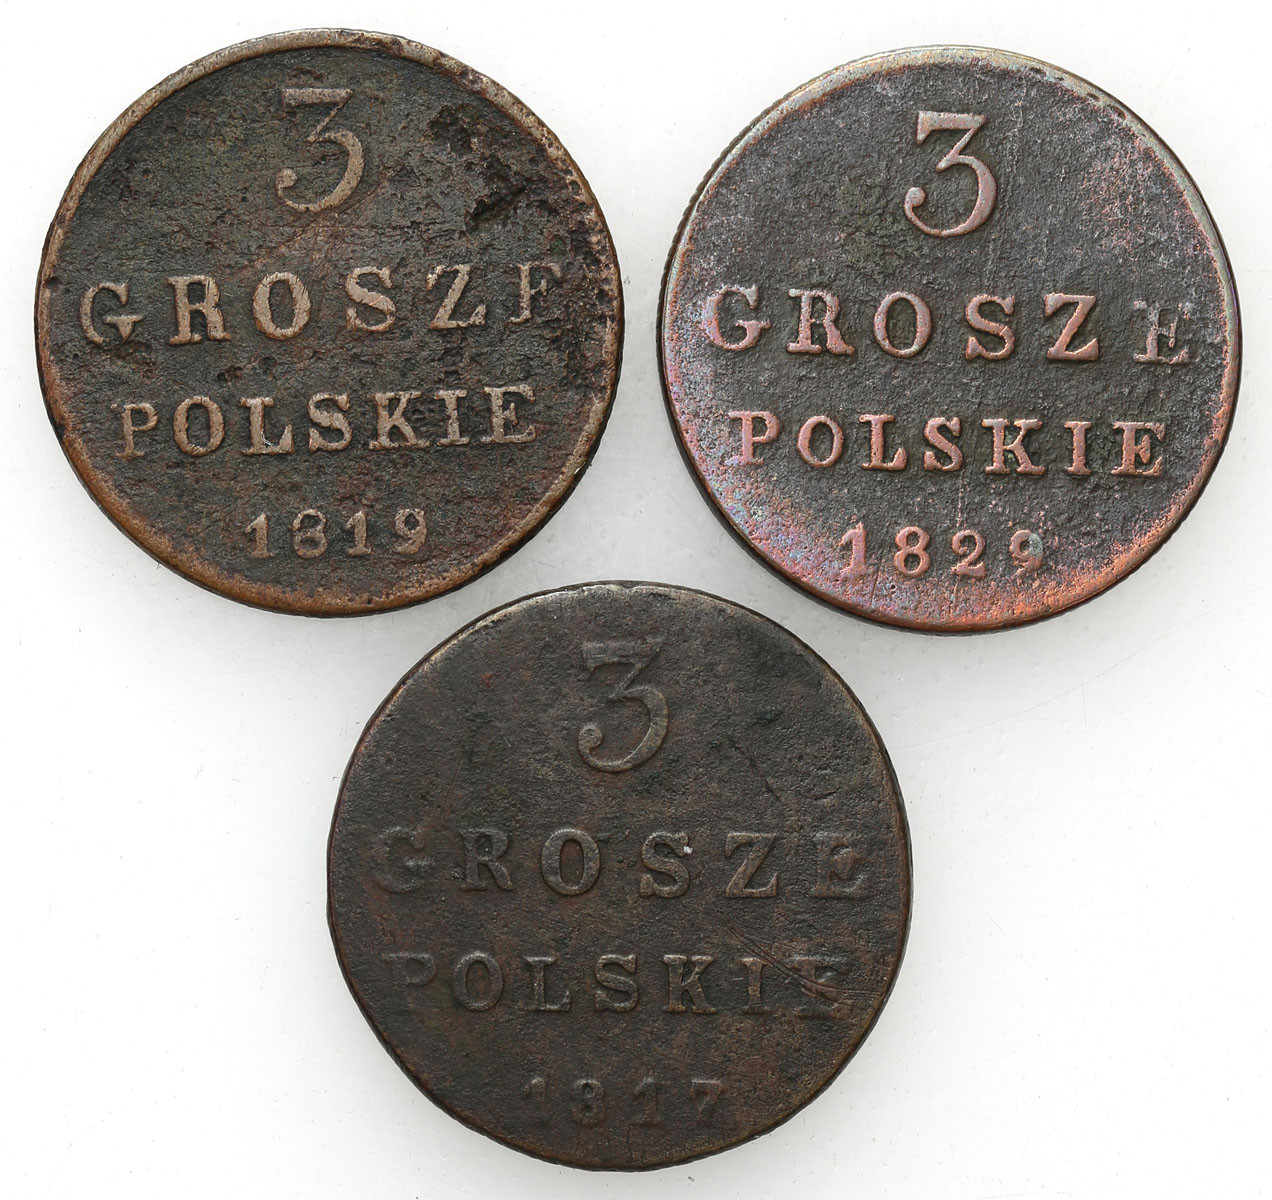 Polska XIX w./Rosja. Aleksander I, Mikołaj I. 3 grosze (trojak) 1817, 1819, 1829, Warszawa, zestaw 3 monet